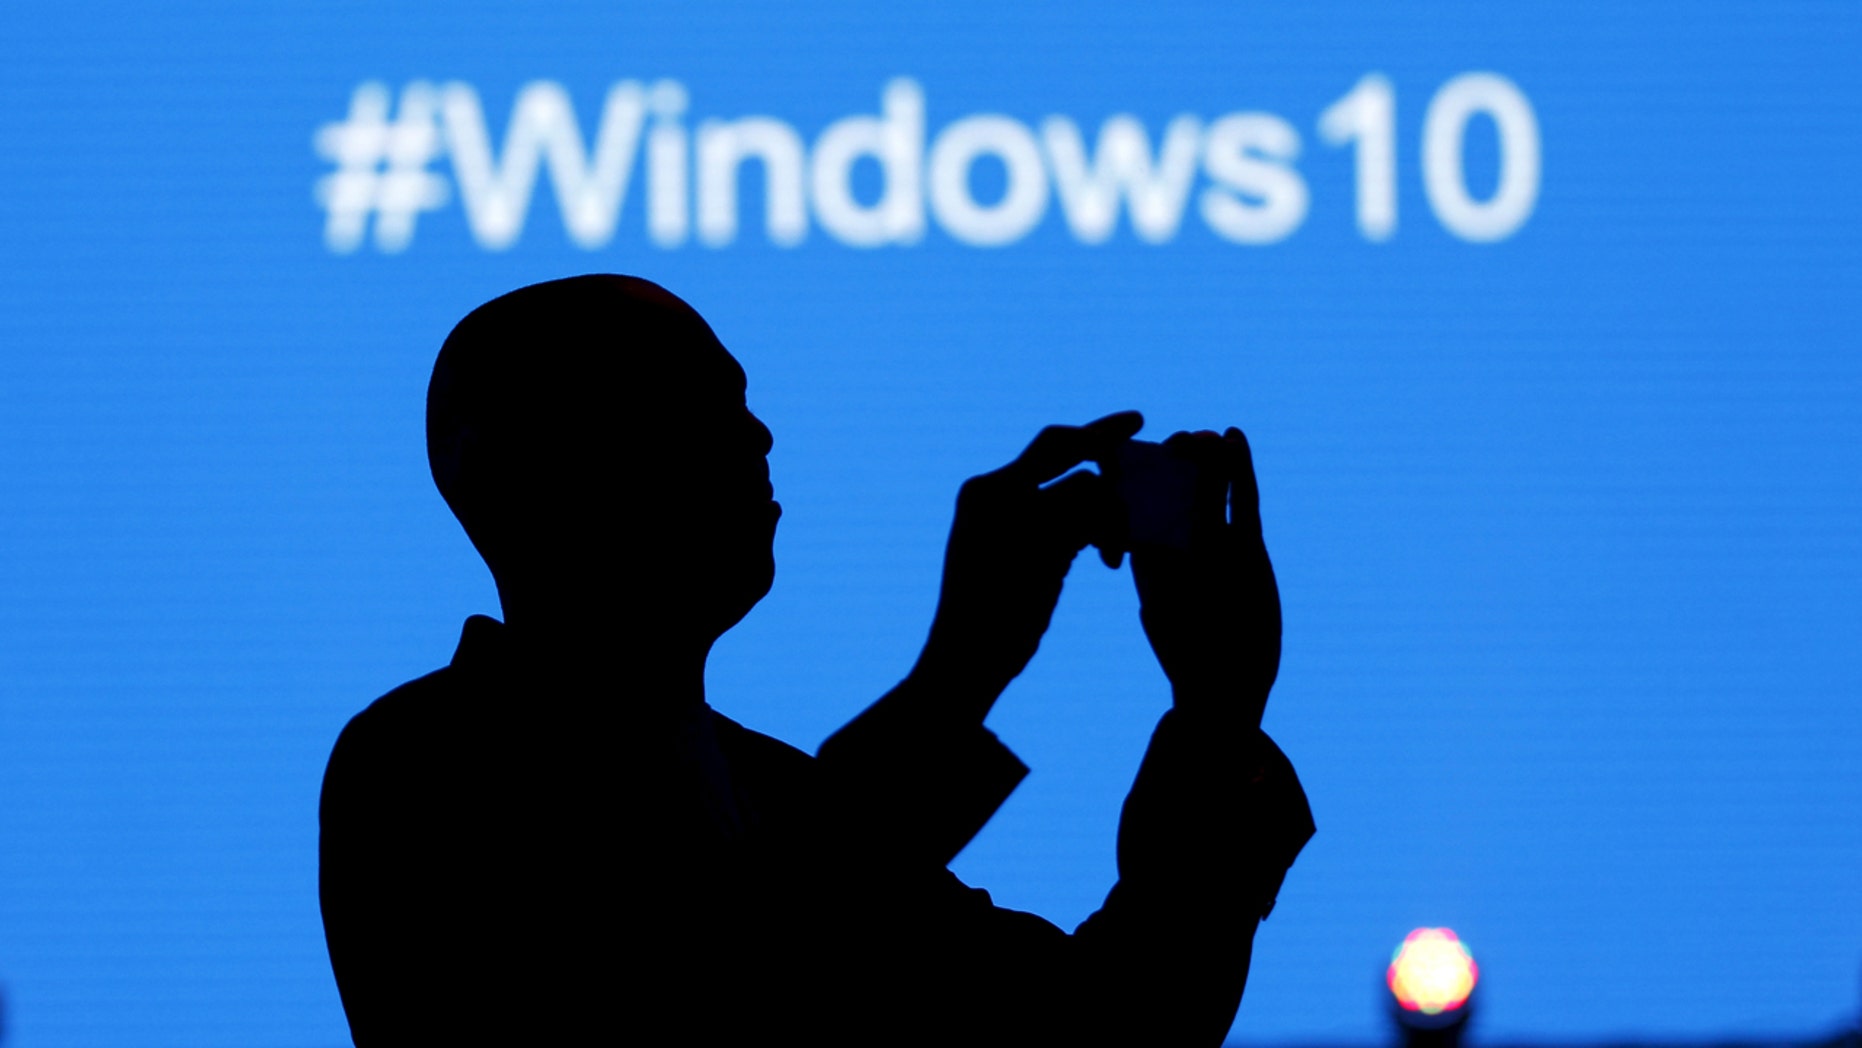 یک نماینده مایکروسافت هنگام راه اندازی سیستم عامل ویندوز 10 در نایروبی ، پایتخت کنیا ، 29 ژوئیه 2015 ، یک عکس گرفت - یک فایل عکس.